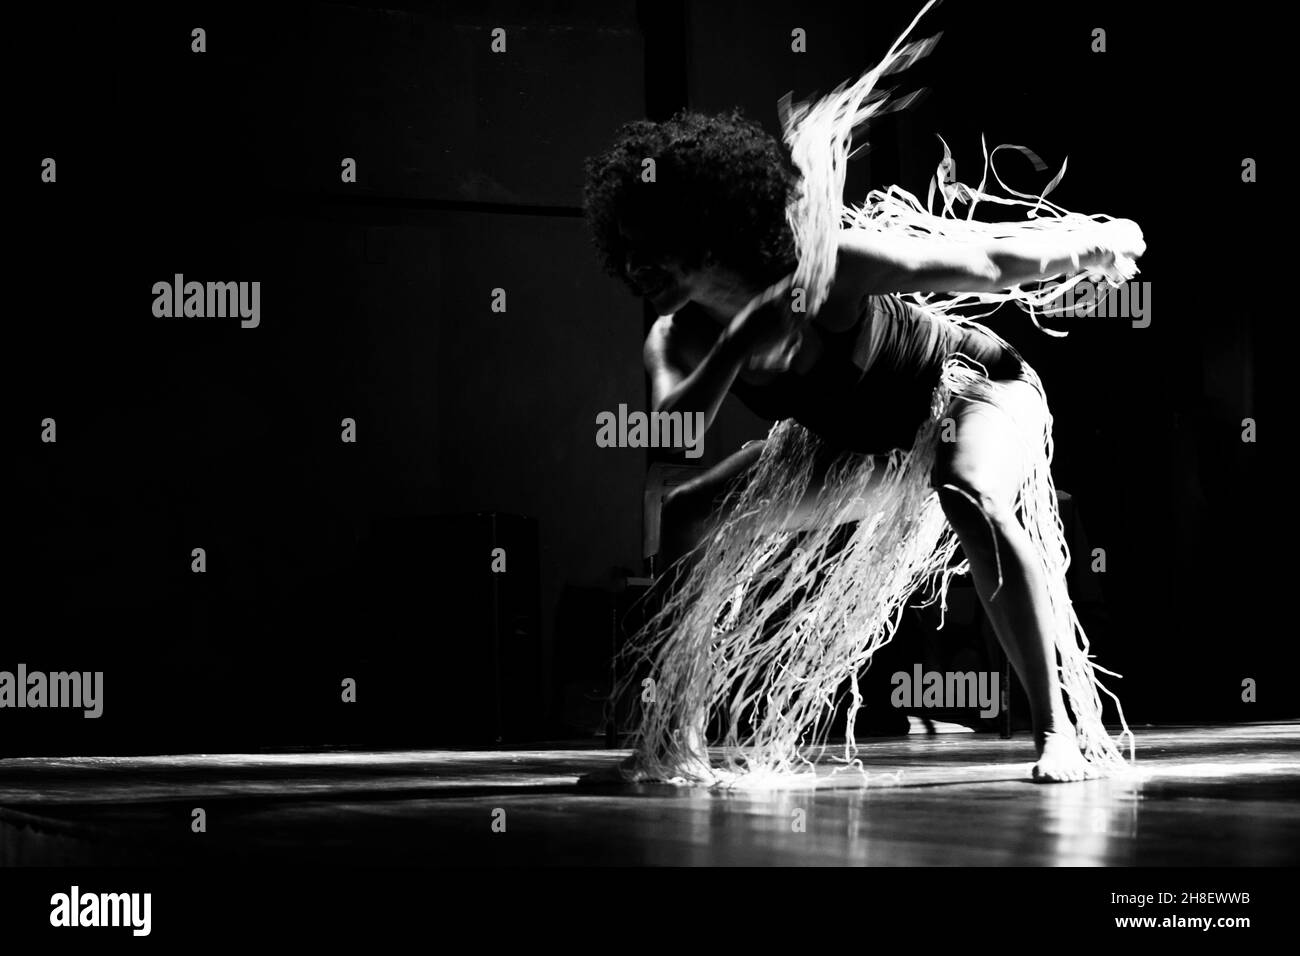 Ritratto in bianco e nero di una donna che balla sul palco su sfondo nero. Salvador, Bahia, Brasile. Foto Stock